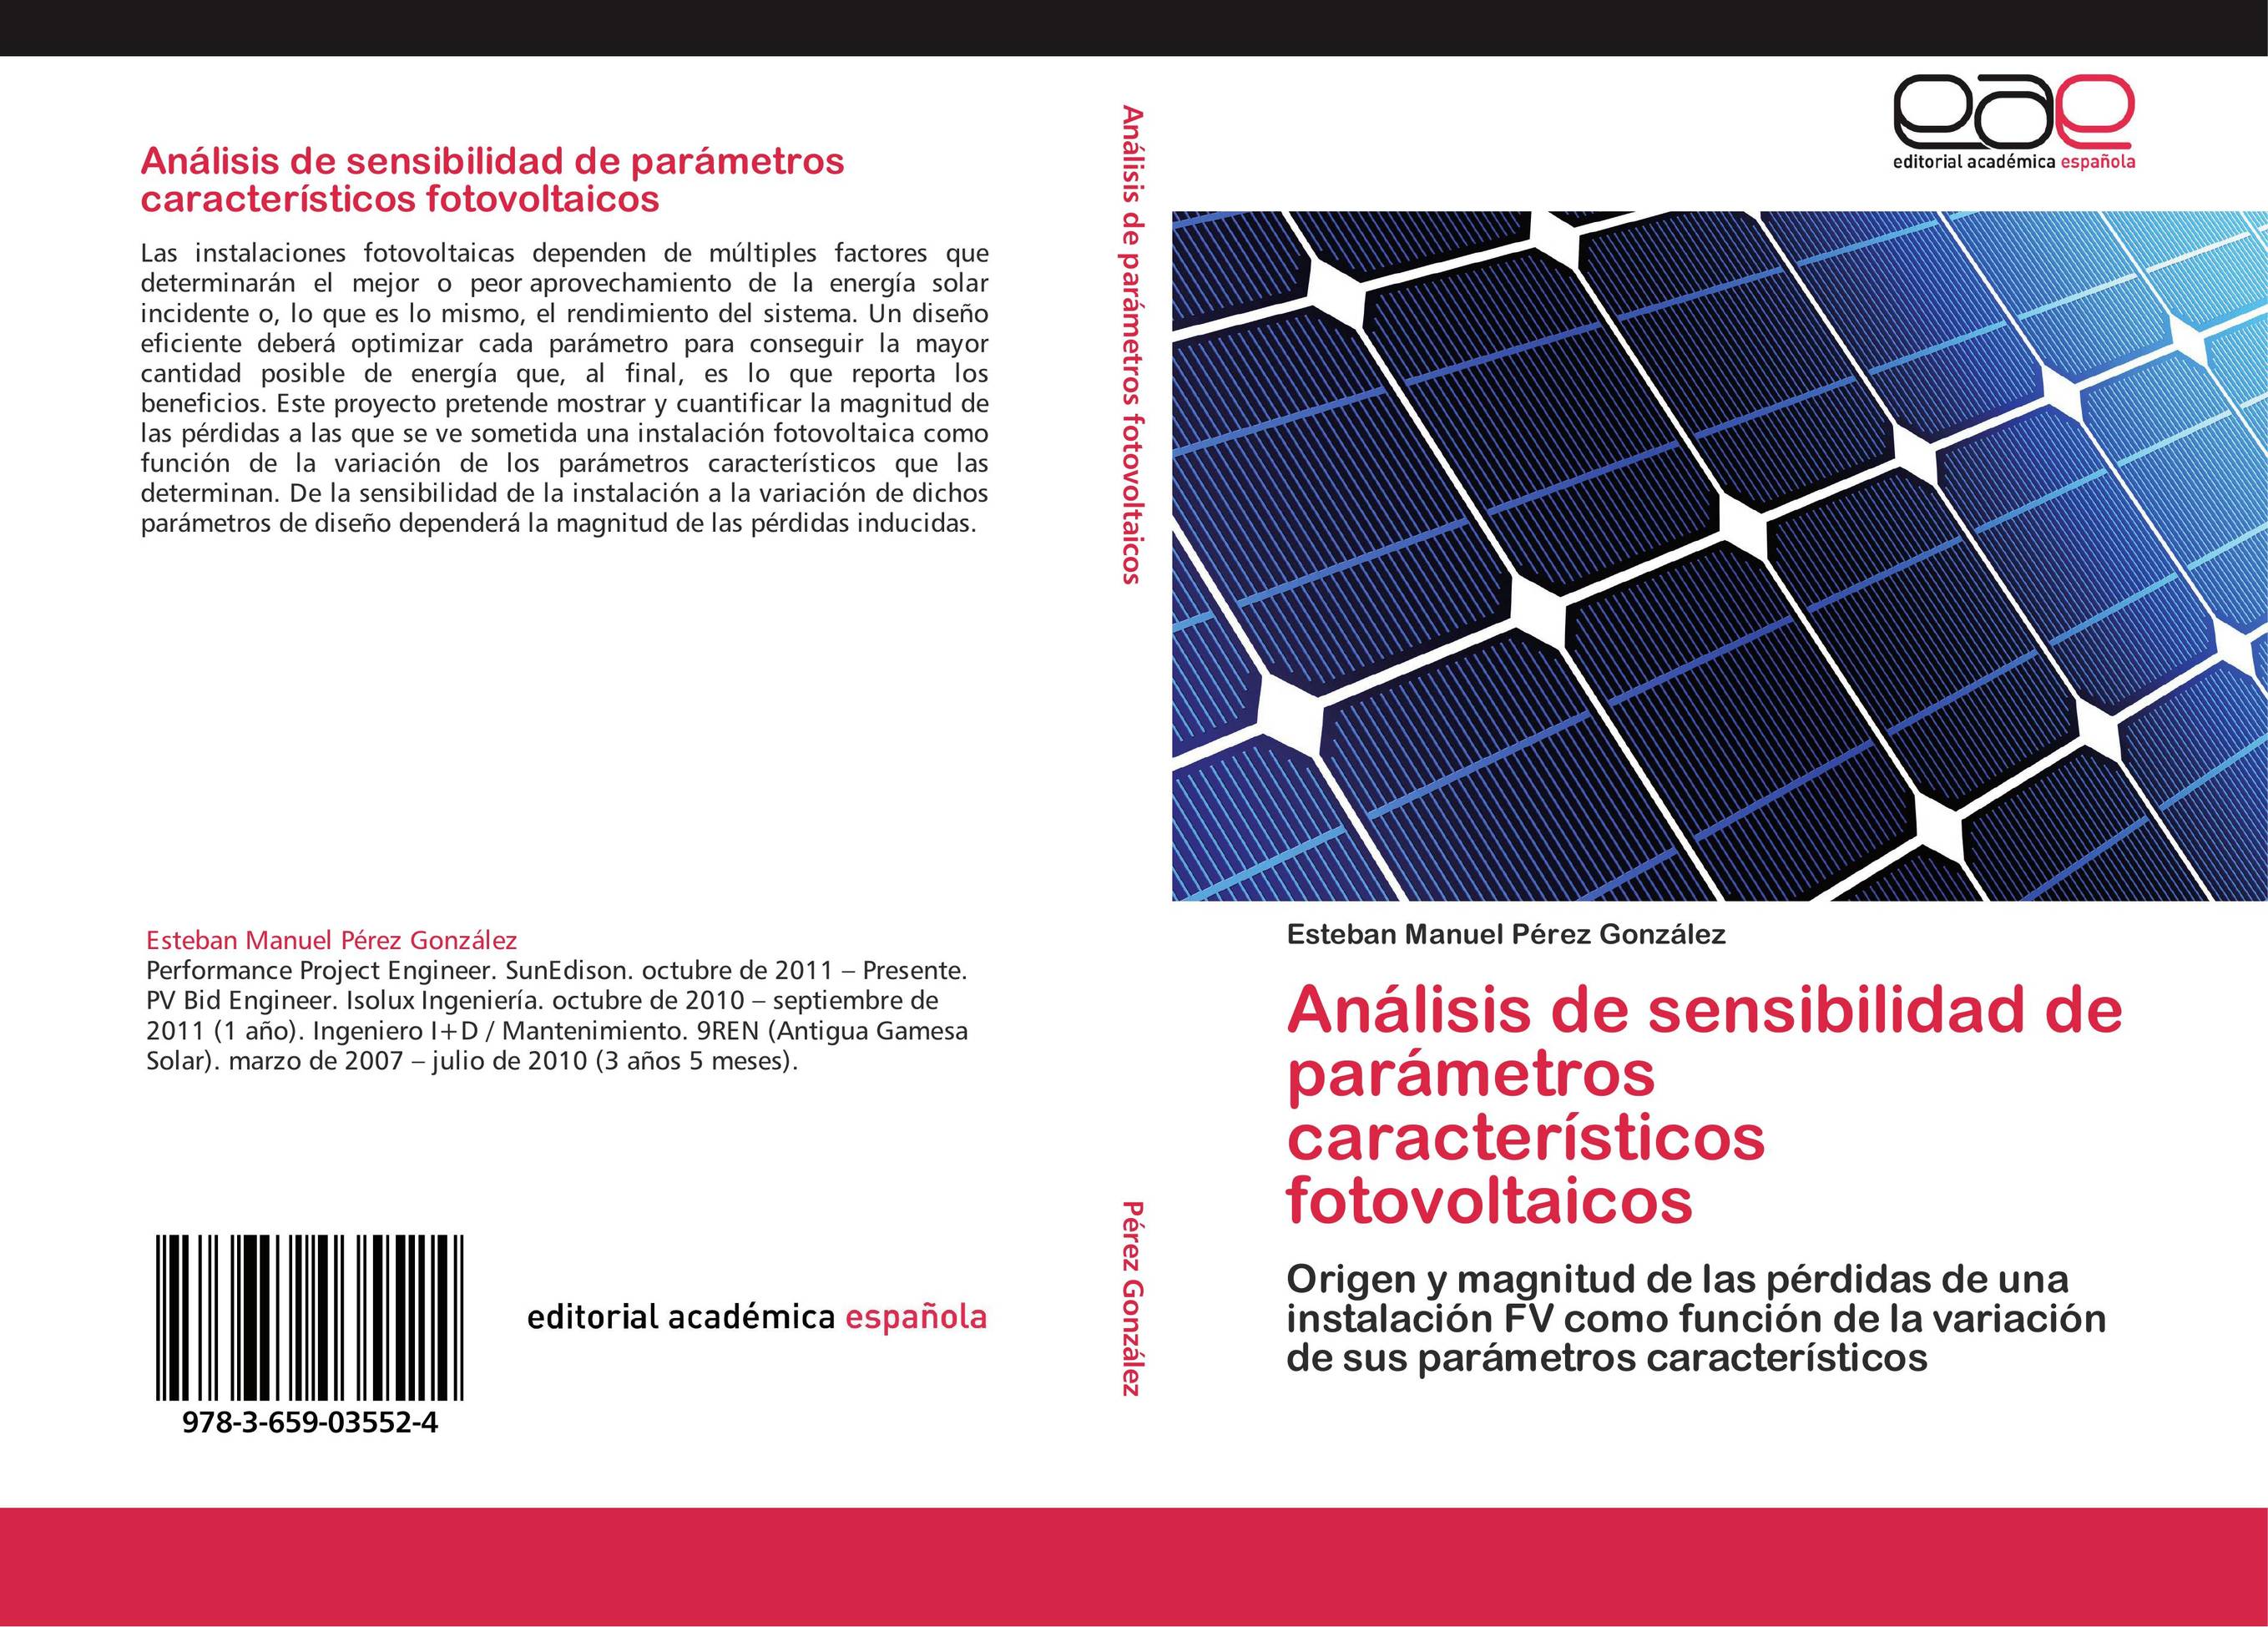 Análisis de sensibilidad de parámetros característicos fotovoltaicos